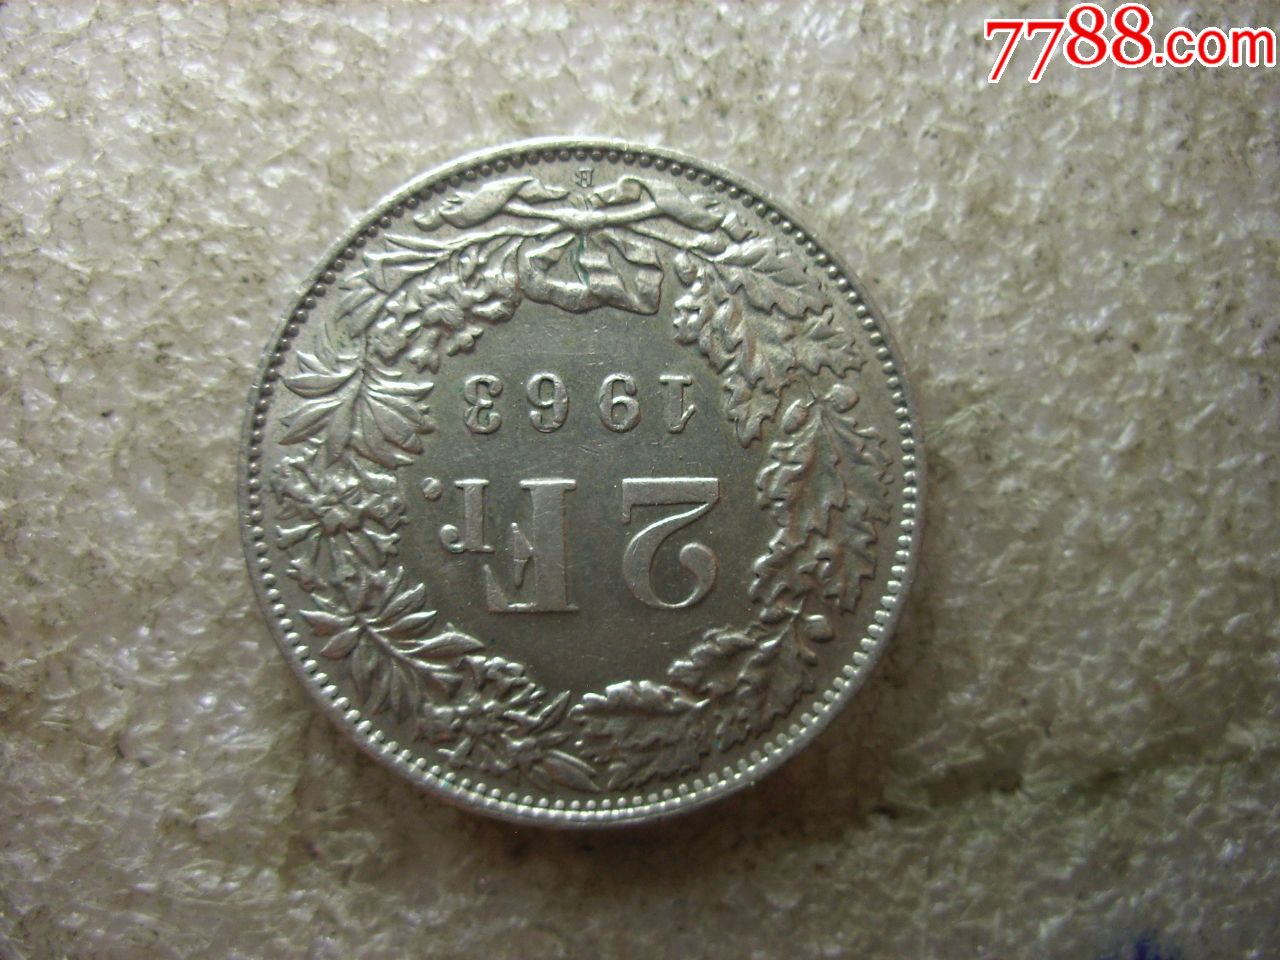 原味美品1963瑞士2法郎银币